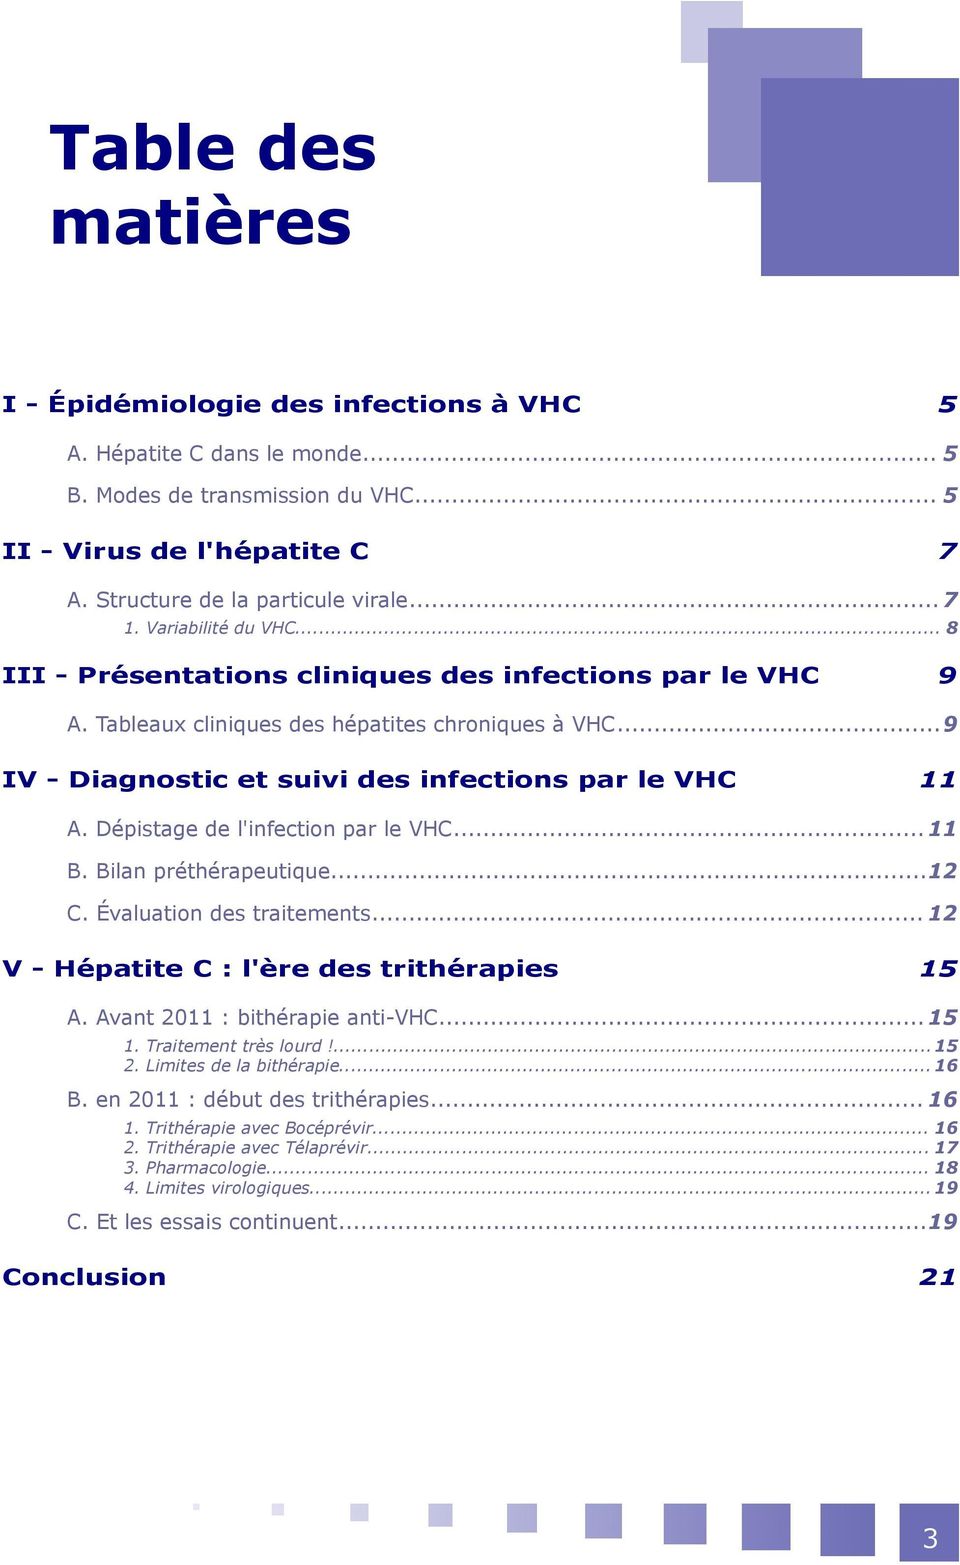 Dépistage de l'infection par le VHC... 11 B. Bilan préthérapeutique...12 C. Évaluation des traitements... 12 V - Hépatite C : l'ère des trithérapies 15 A. Avant 2011 : bithérapie anti-vhc... 15 1.